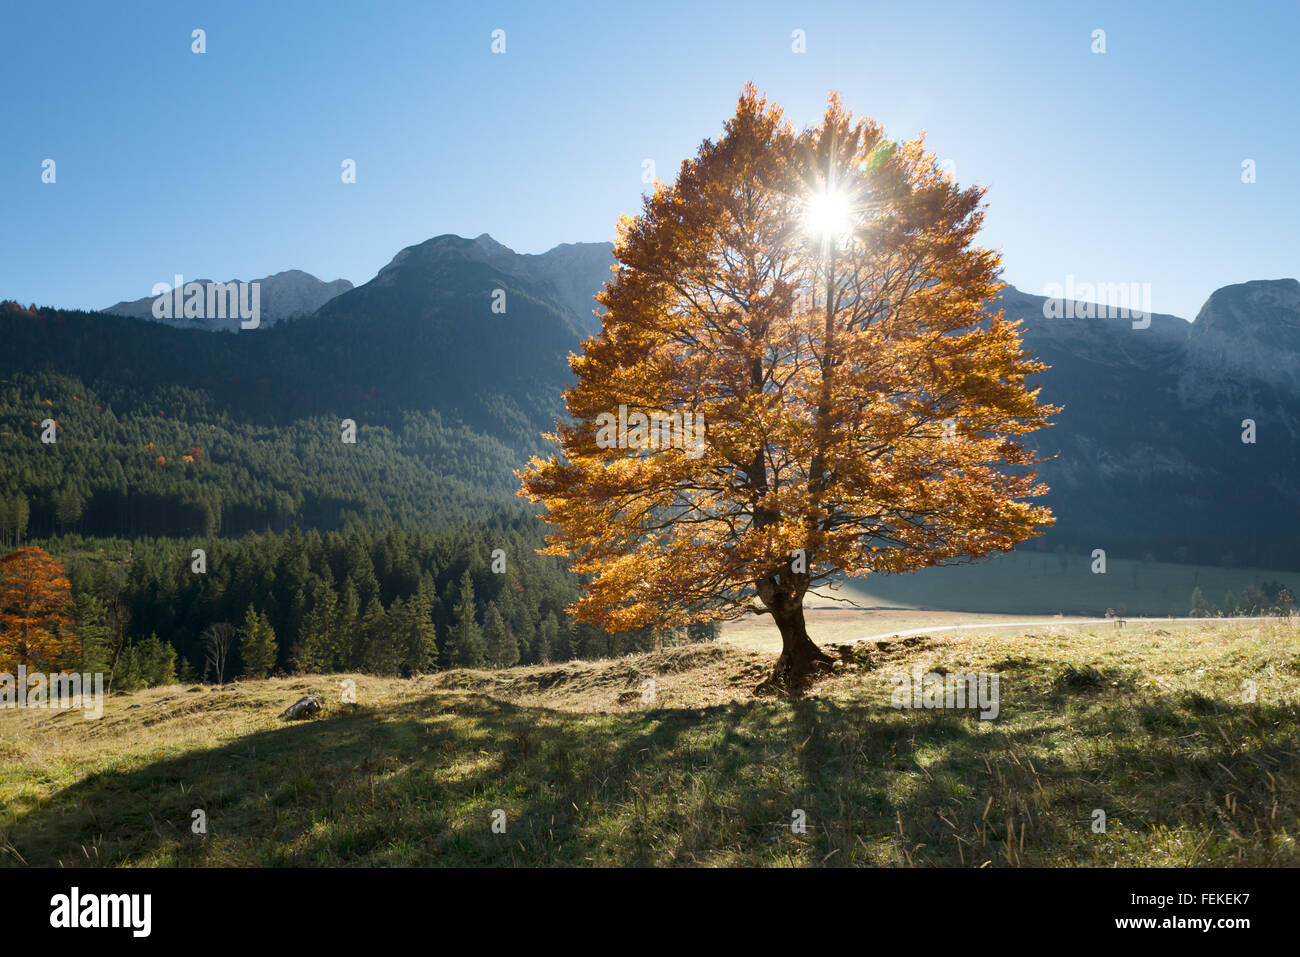 Bright golden tree con foglie di autunno contro montagne e foreste in controluce del sole,großer ahornboden,tirol,Austria Foto Stock